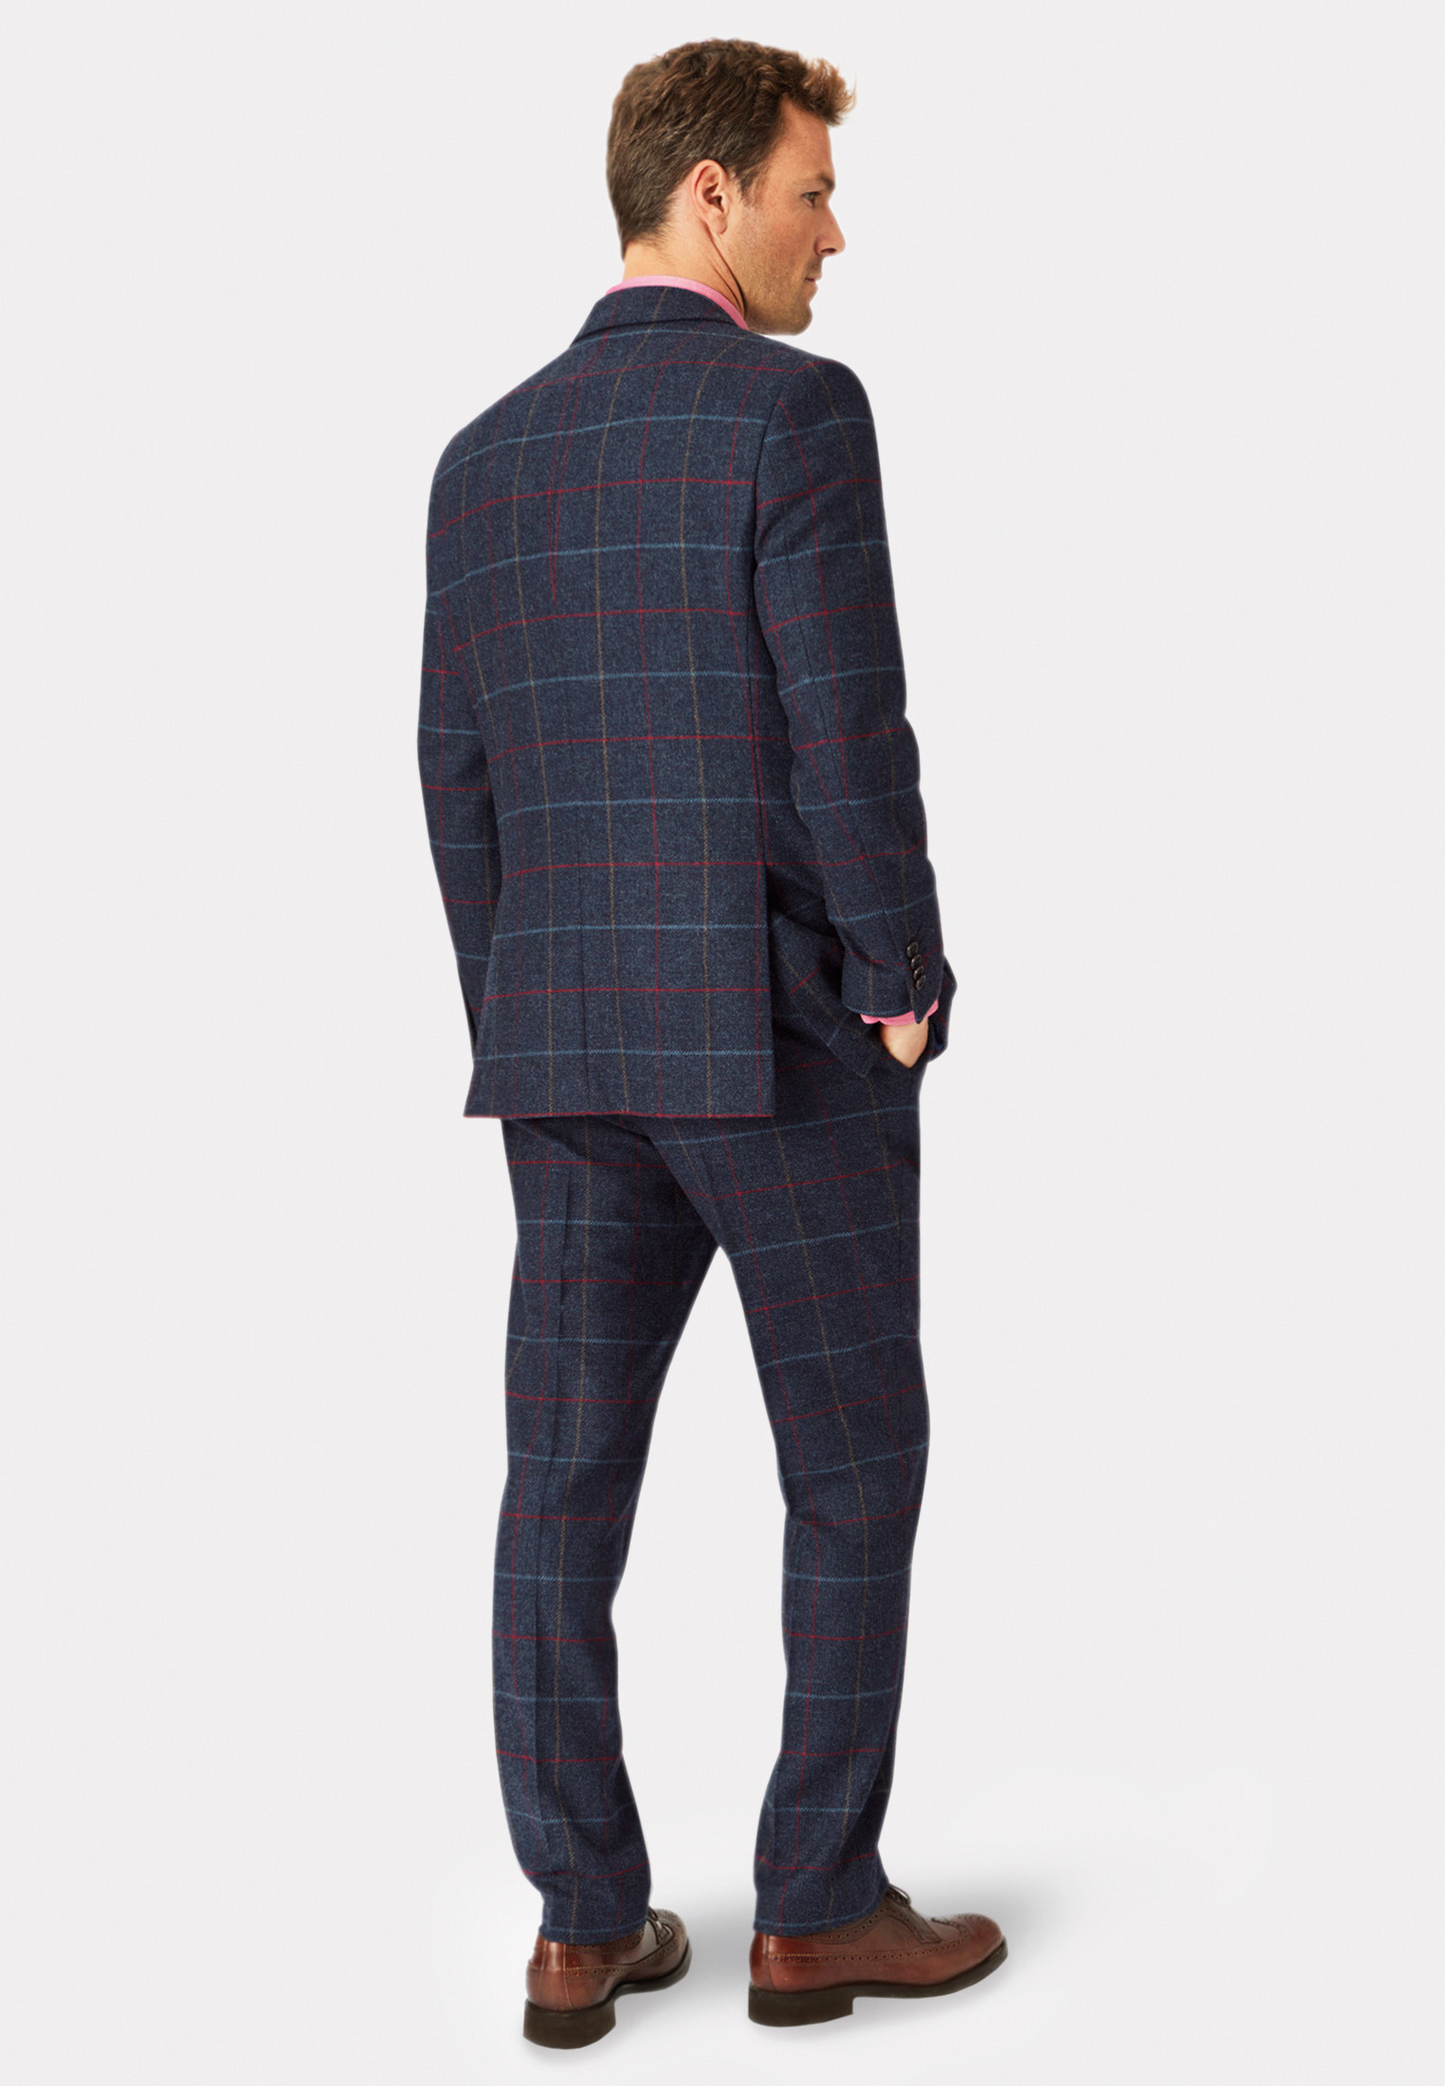 Horace Barton Tweed suit